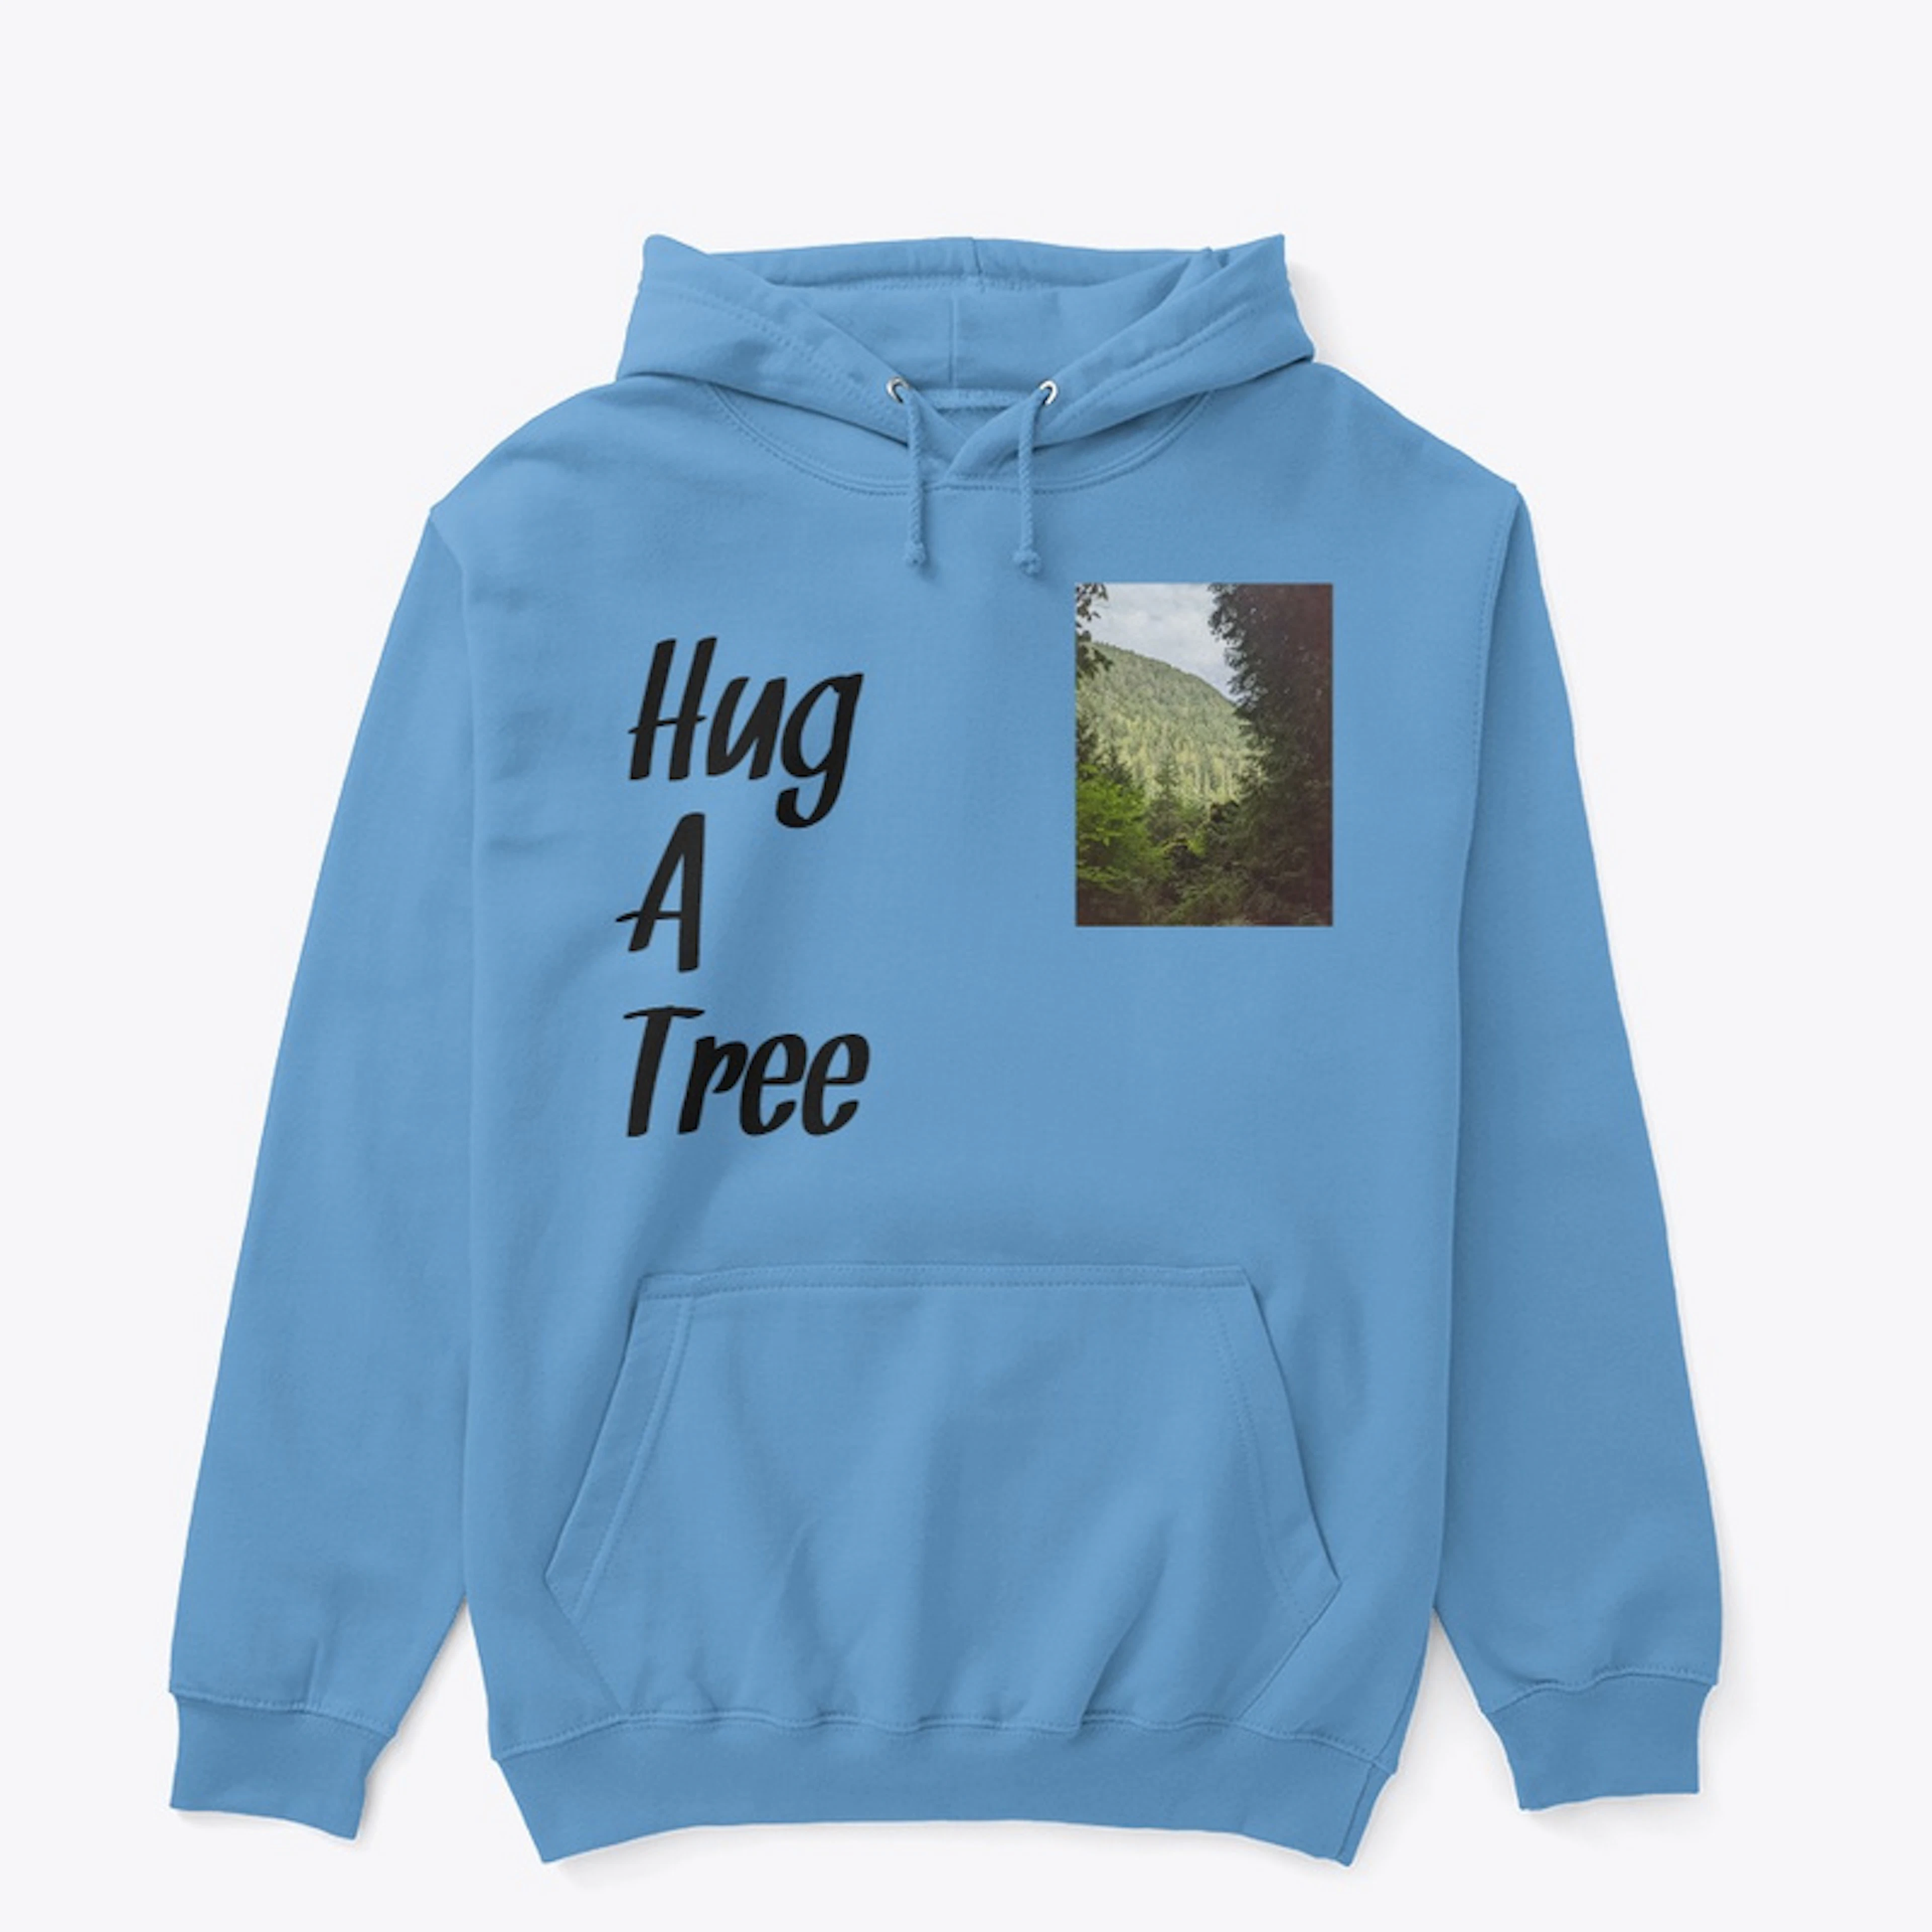 Hug A Tree